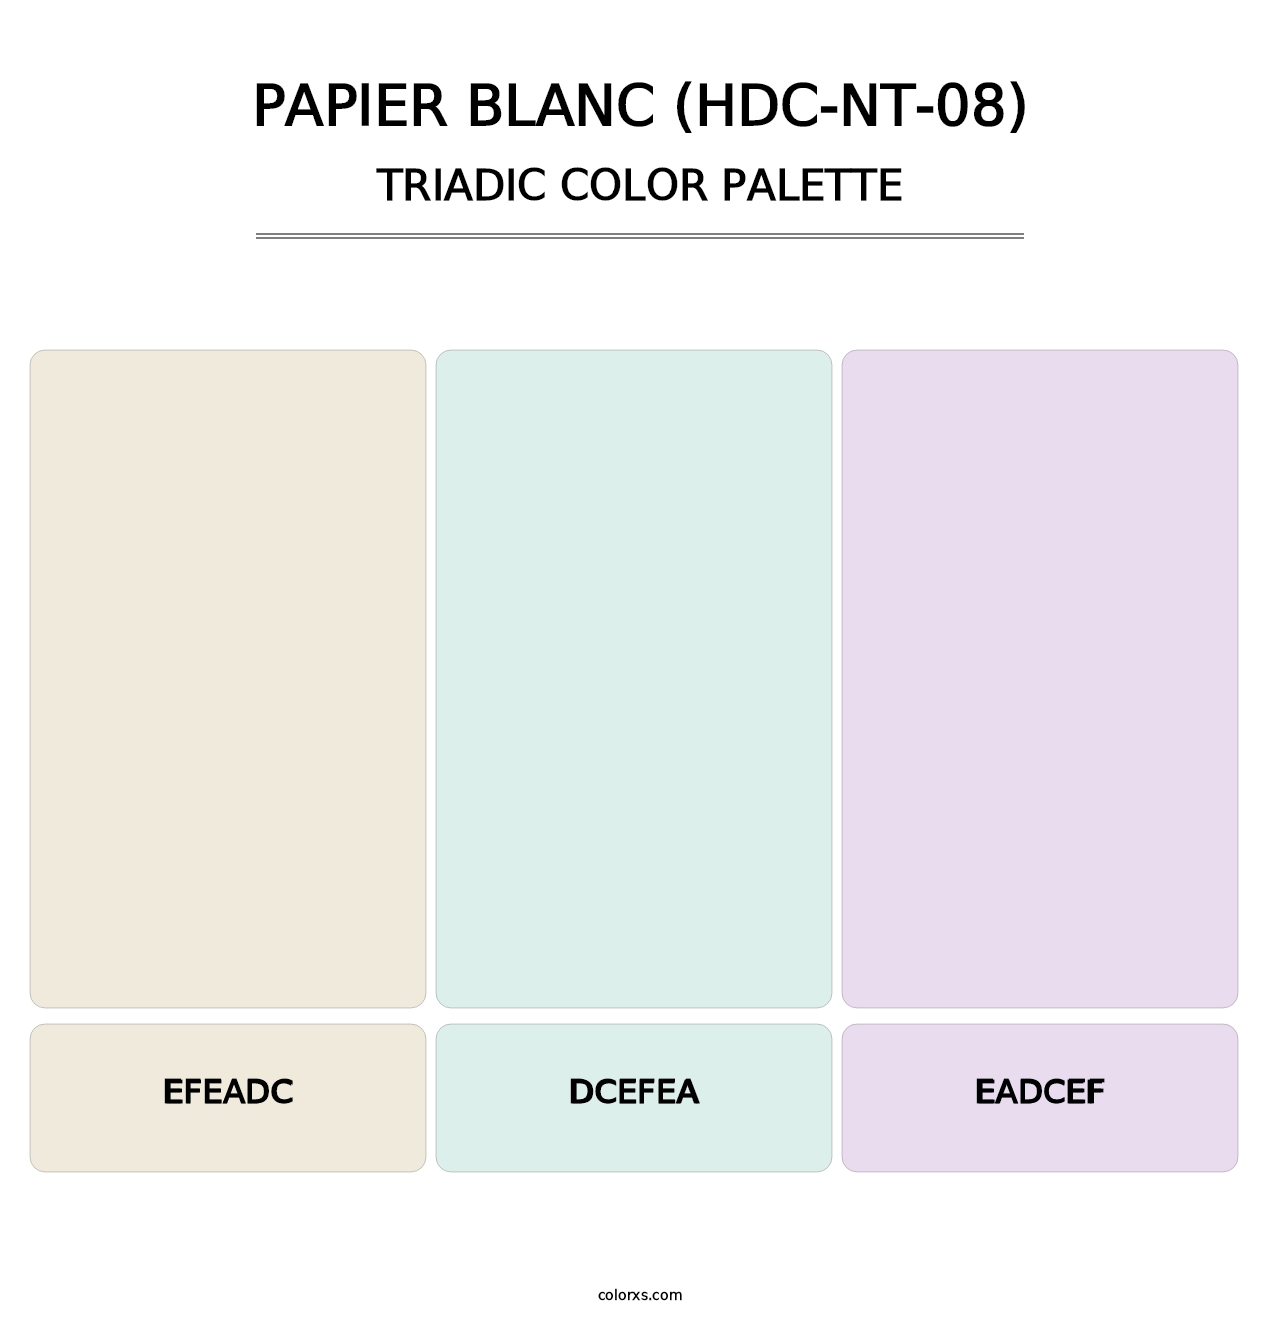 Papier Blanc (HDC-NT-08) - Triadic Color Palette